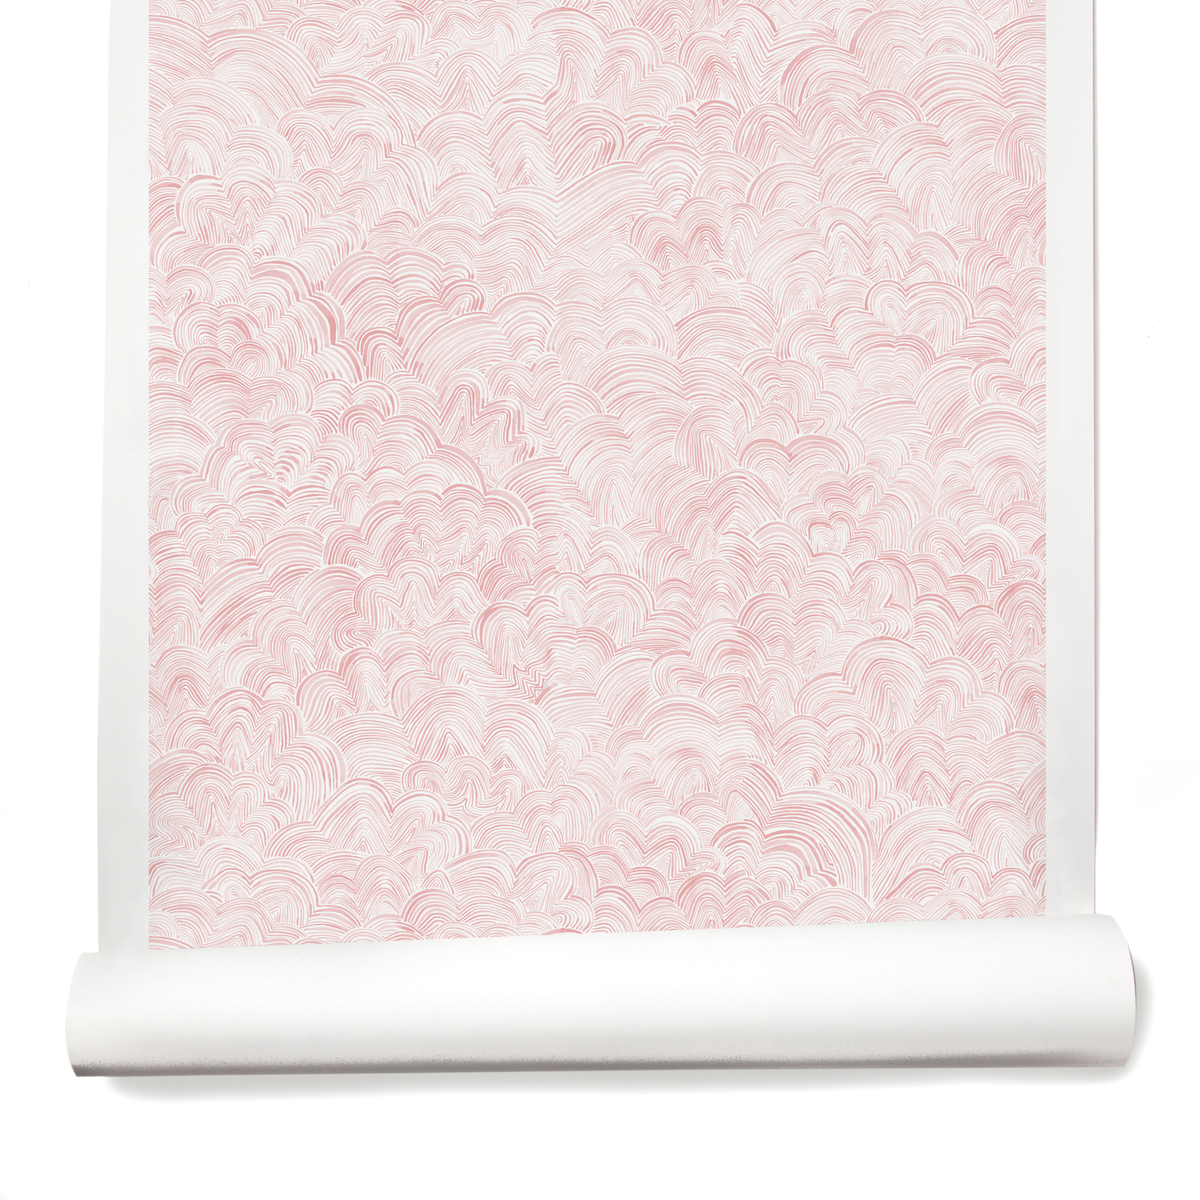 Linear Cloud Wallpaper in Pink